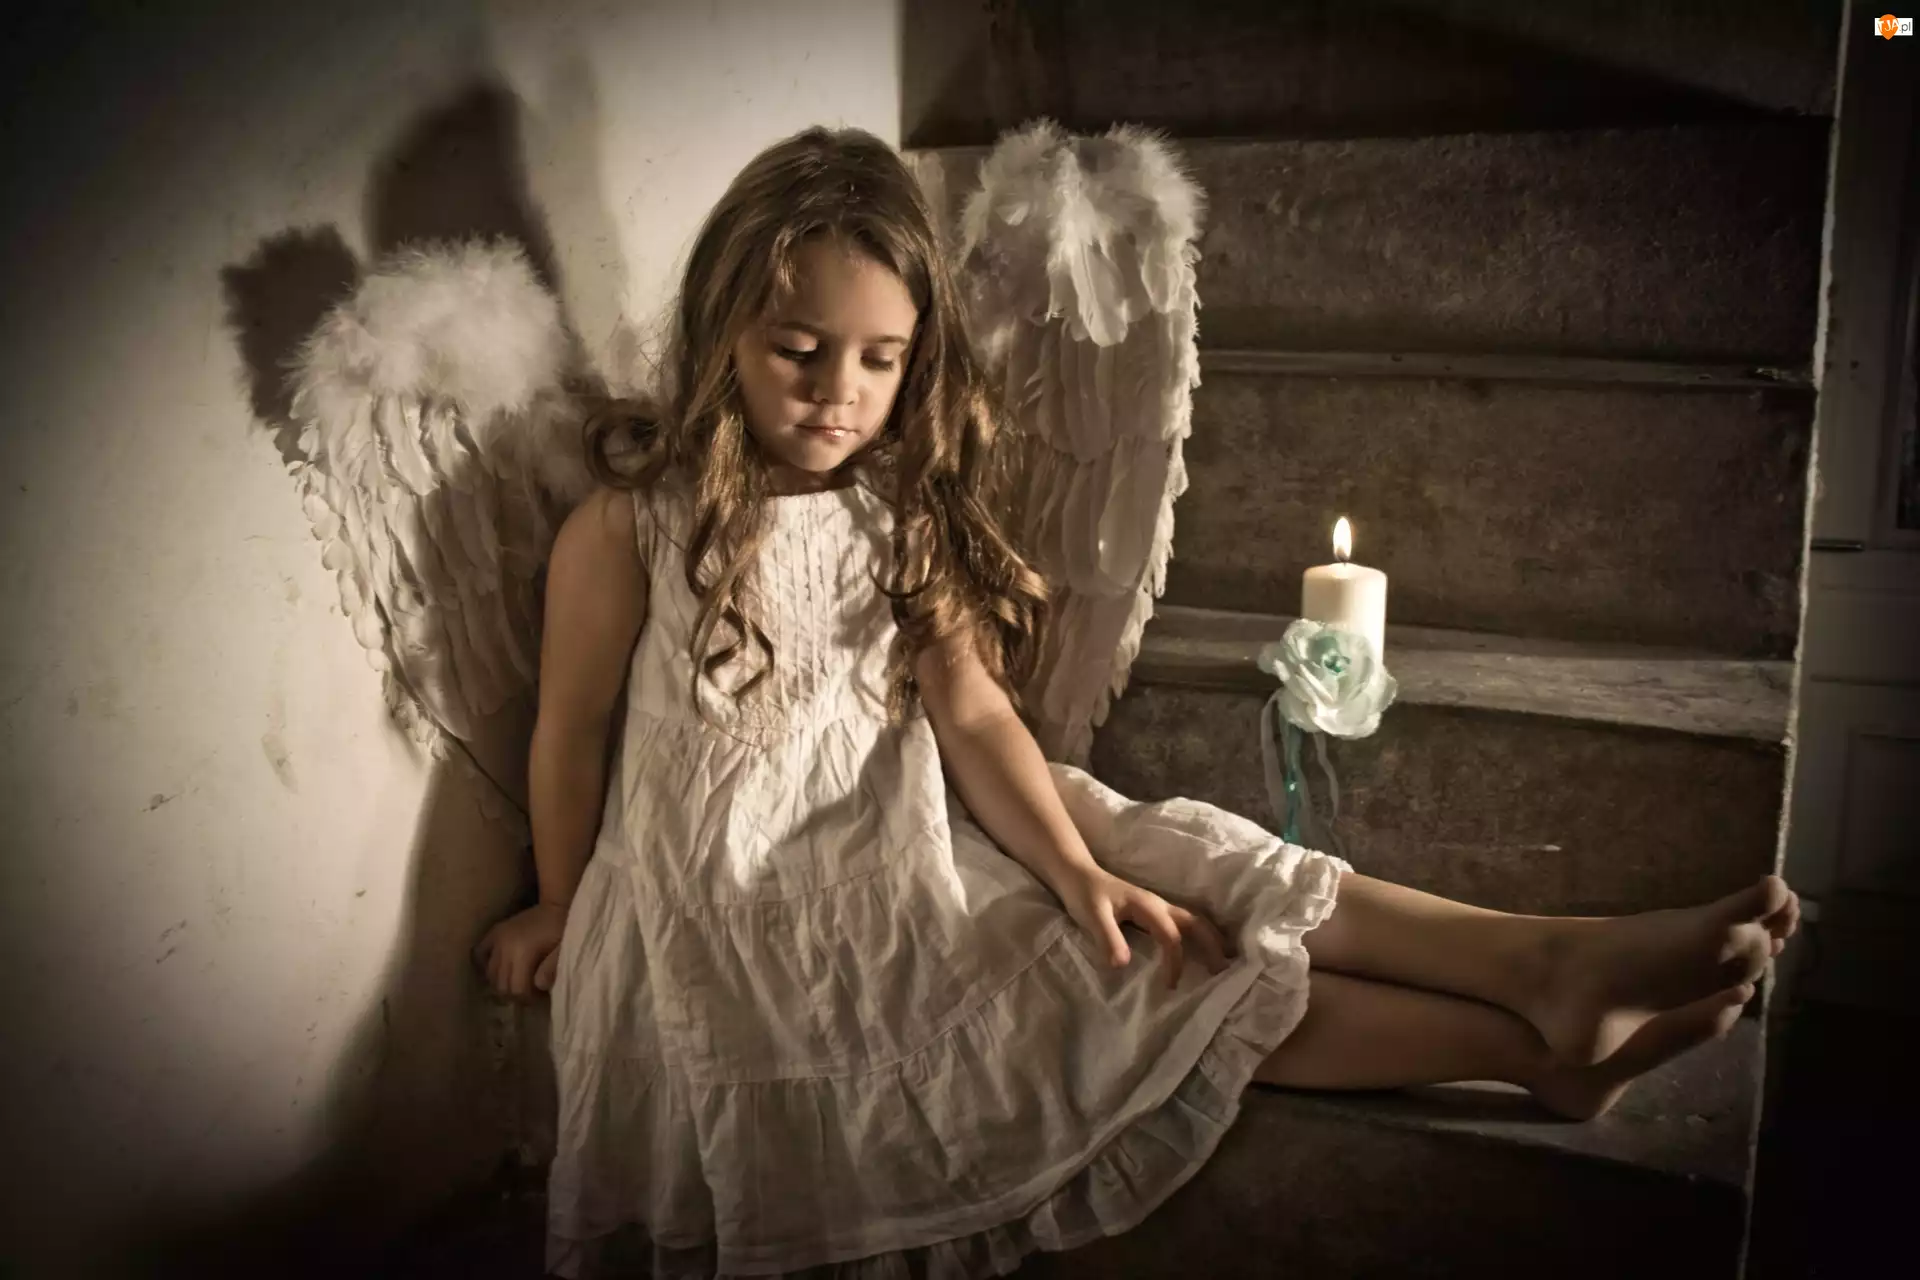 Teen girls angels models. Девочка с крыльями ангела. Девушка - ангел. Фотосессия с крыльями ангела. Маленький ангел.